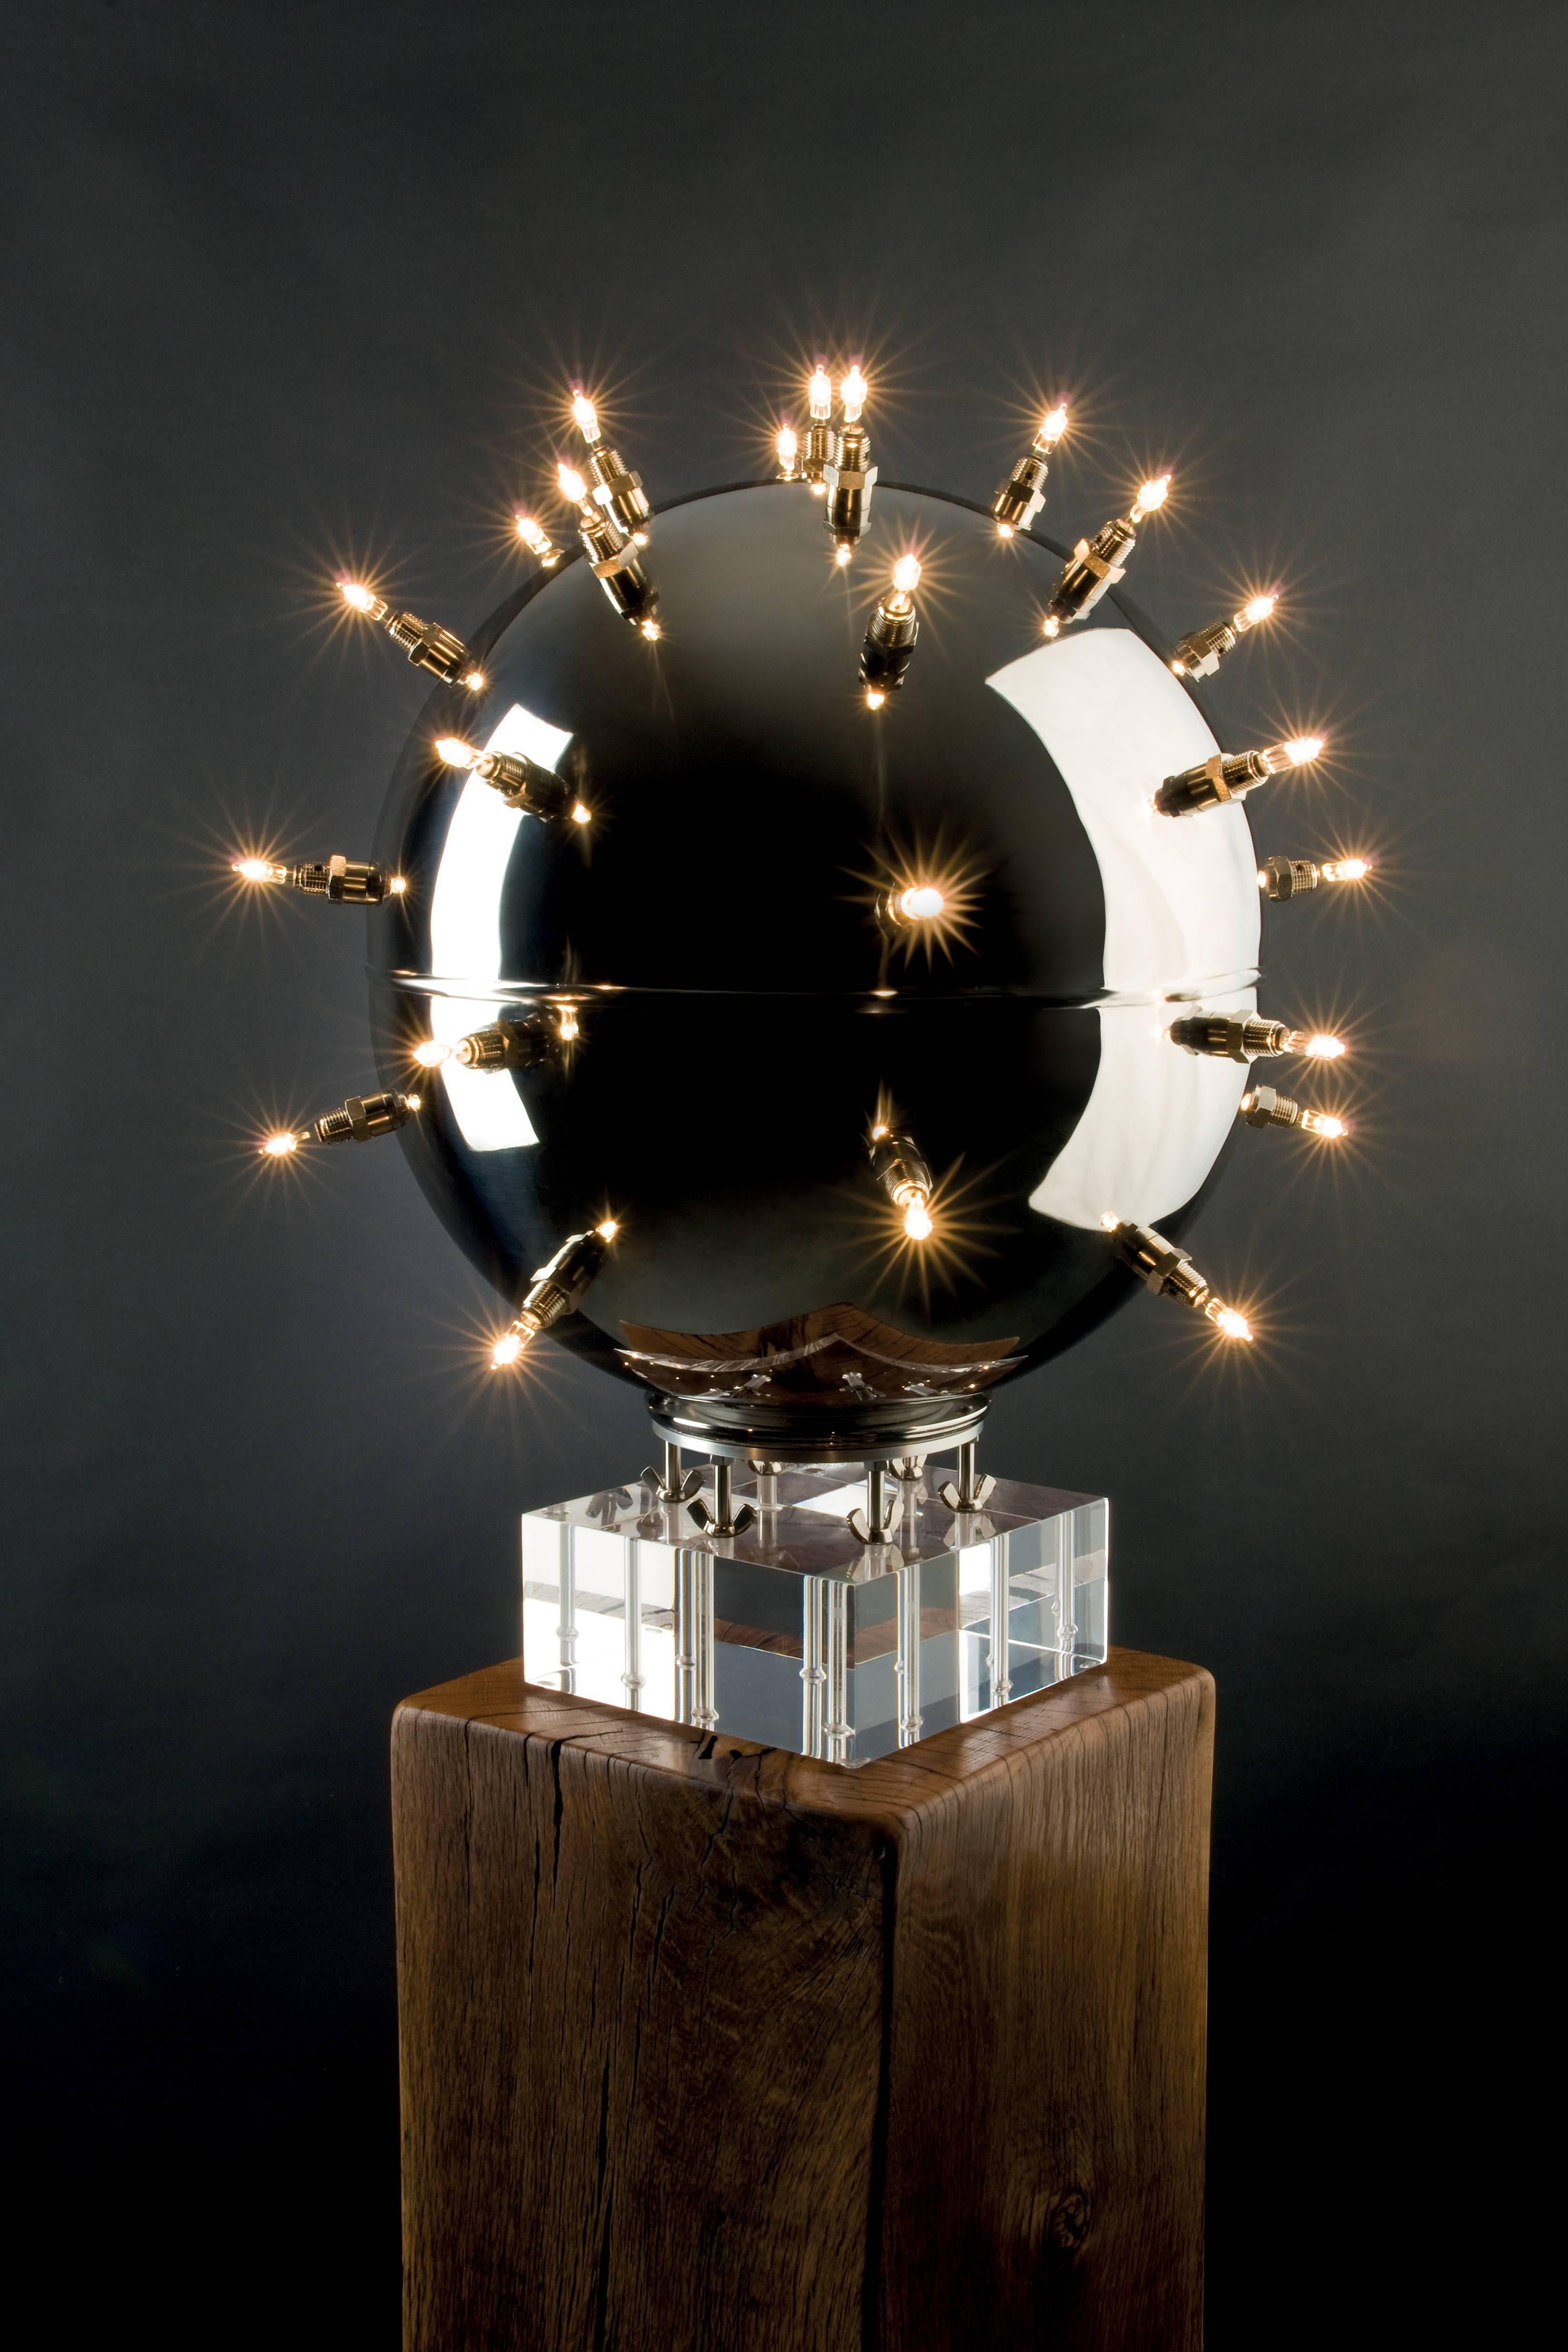 La lampe suspendue 'BeMine 33' est composée d'une sphère en acier inoxydable poli miroir et de 33 sources d'éclairage. L'acier inoxydable hautement poli permet d'intéressants jeux de reflets sur la surface de la sphère, qui apparaissent également